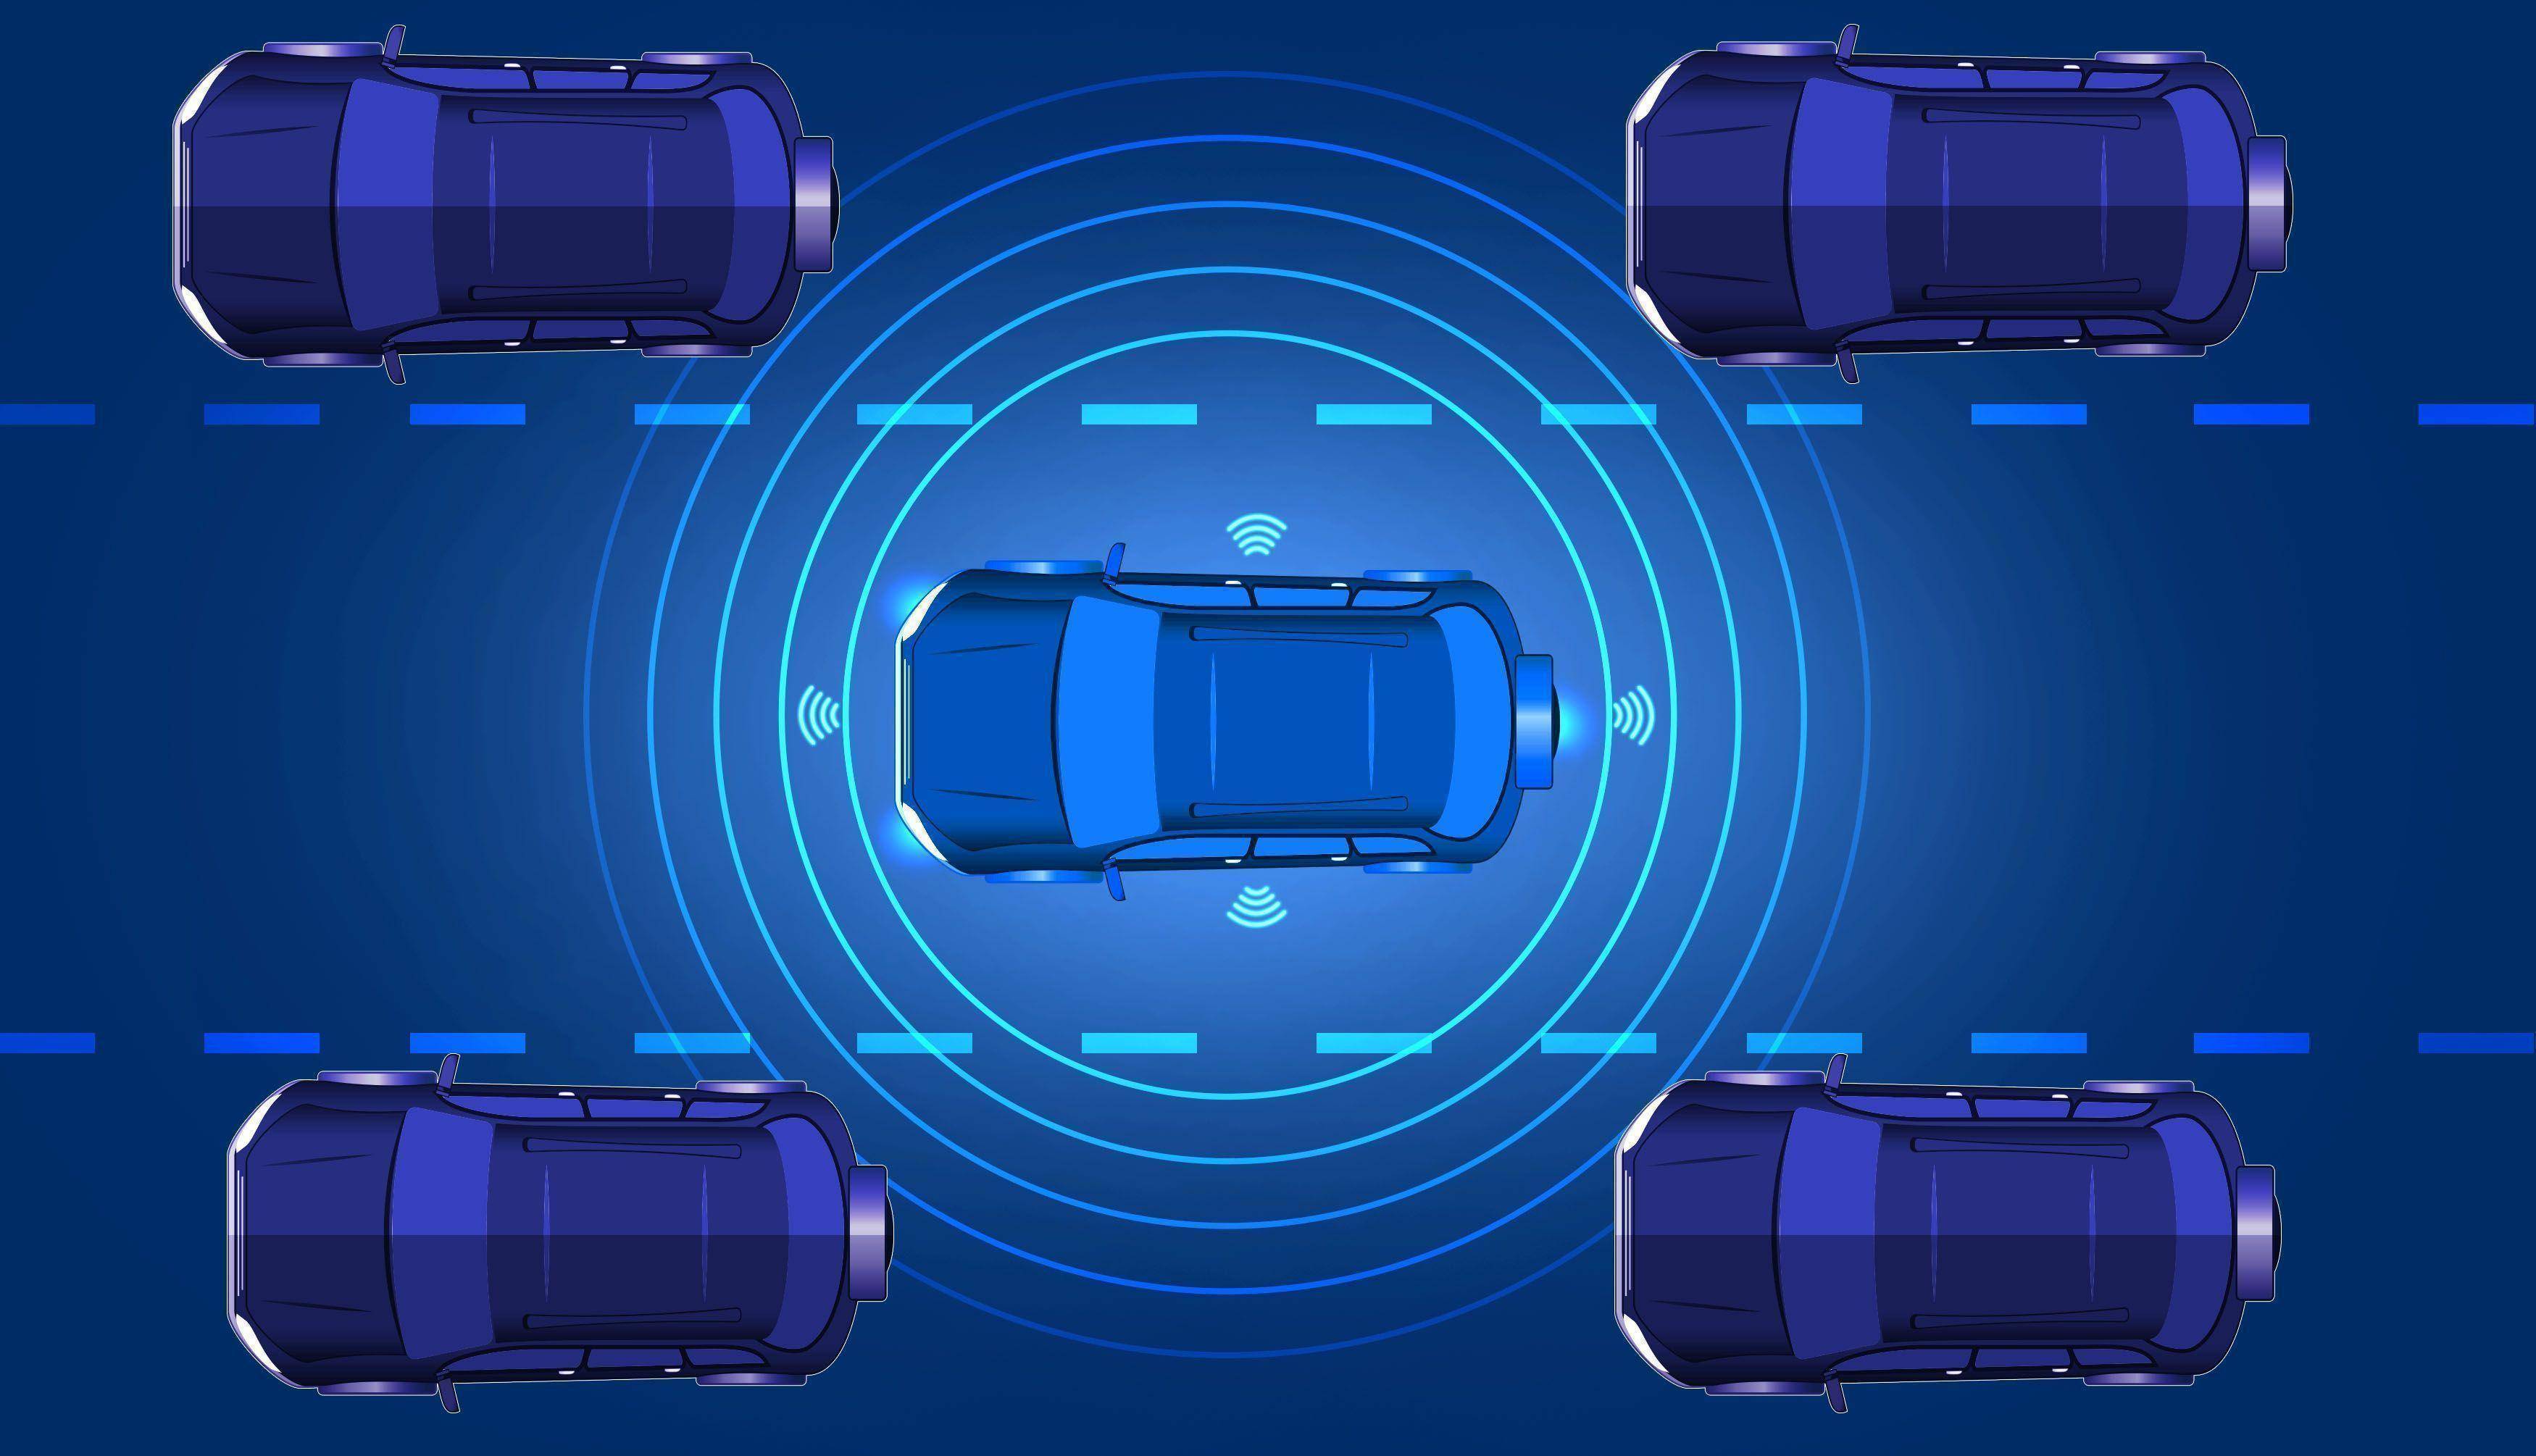 OiCar 未來汽車智能化趨勢